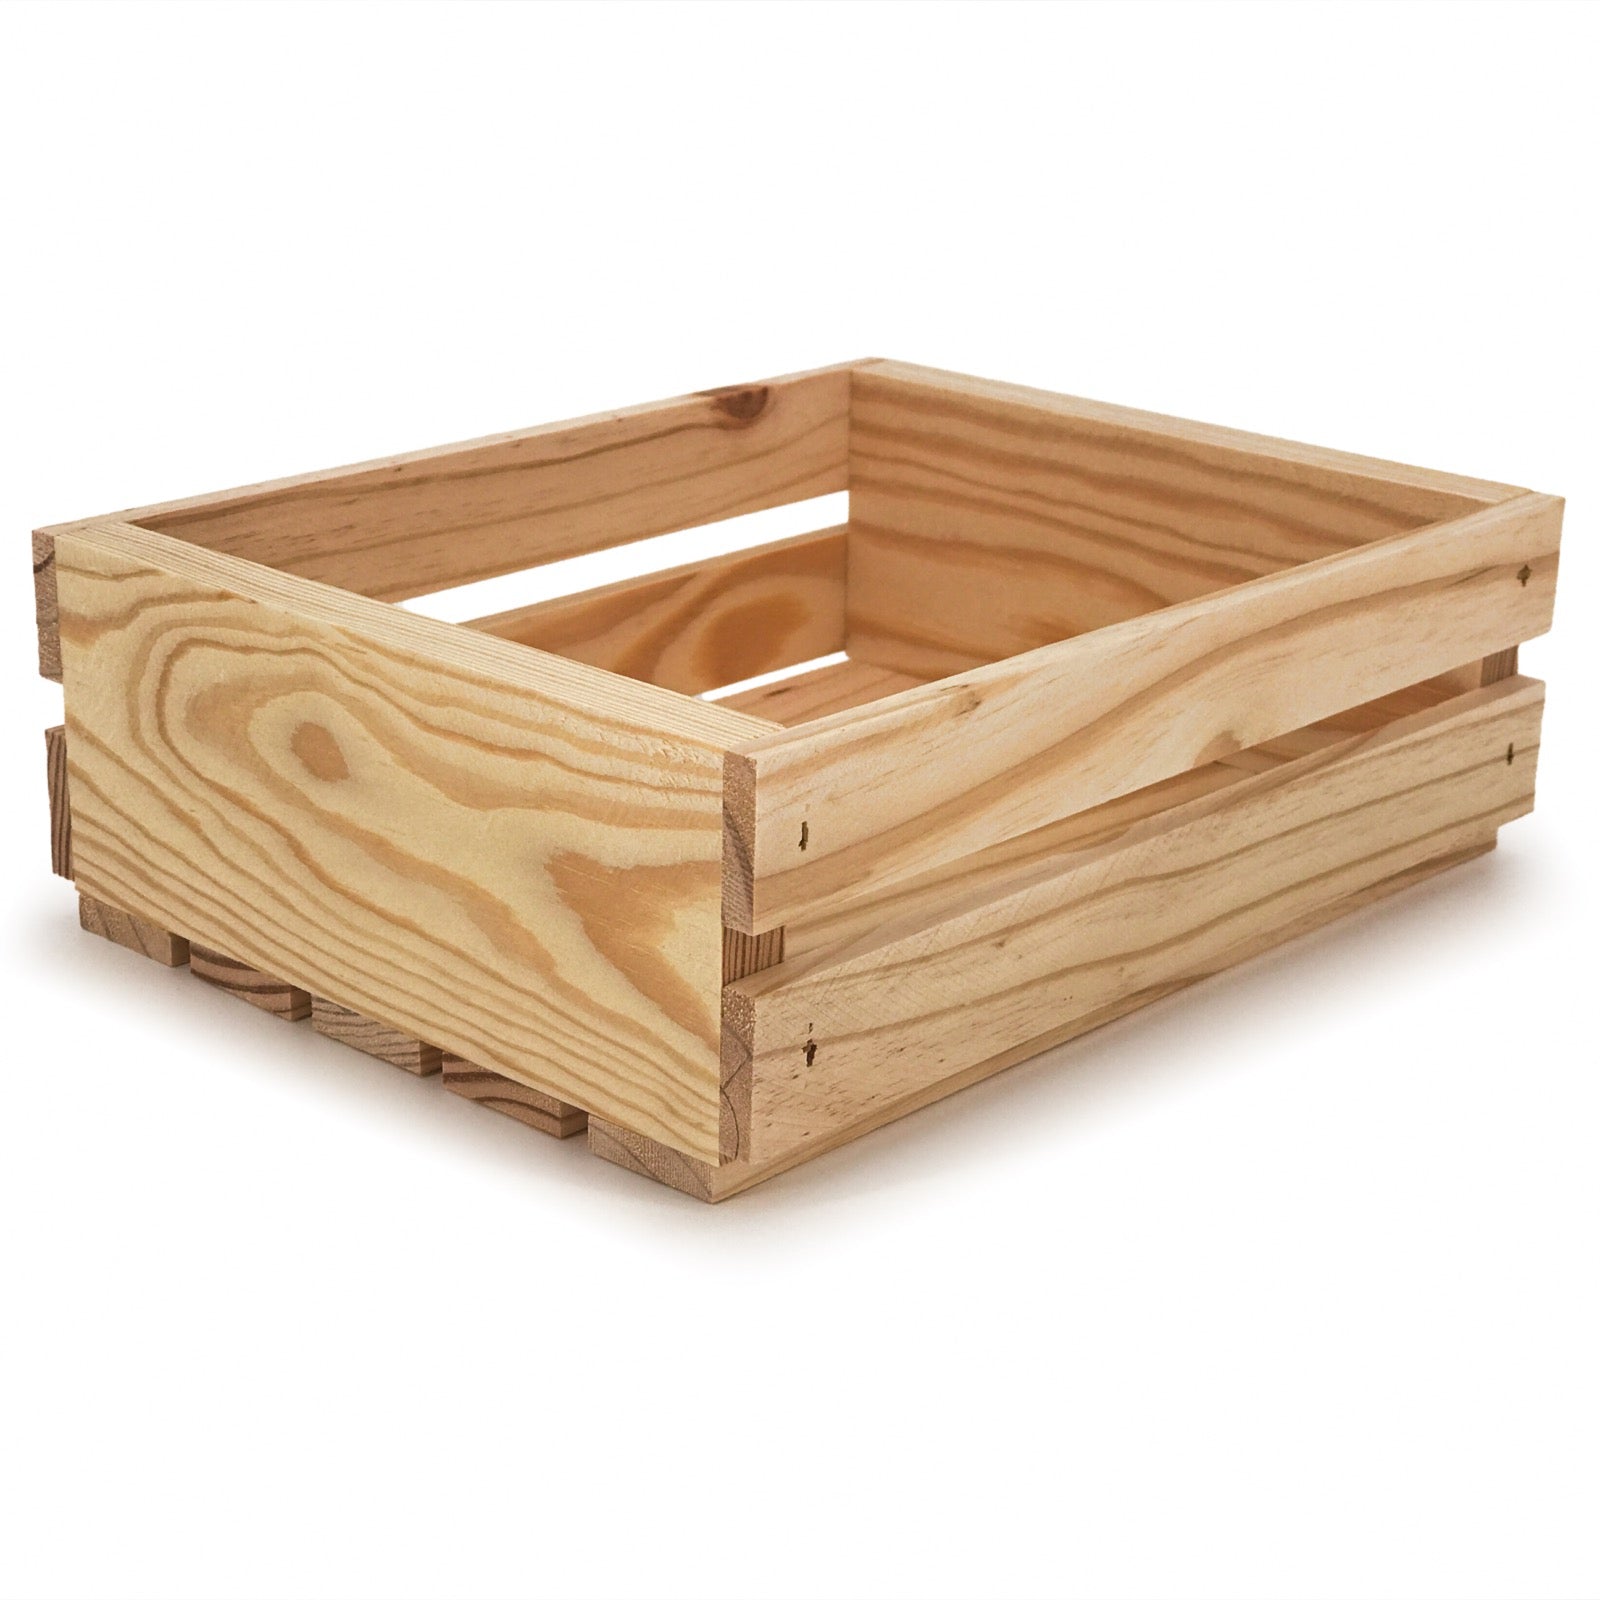 Small wooden crate 10x8x3.5, 6-S2-10.375-8.5625-3.5-NX-NW-NL, 12-S2-10.375-8.5625-3.5-NX-NW-NL, 24-S2-10.375-8.5625-3.5-NX-NW-NL, 48-S2-10.375-8.5625-3.5-NX-NW-NL, 96-S2-10.375-8.5625-3.5-NX-NW-NL